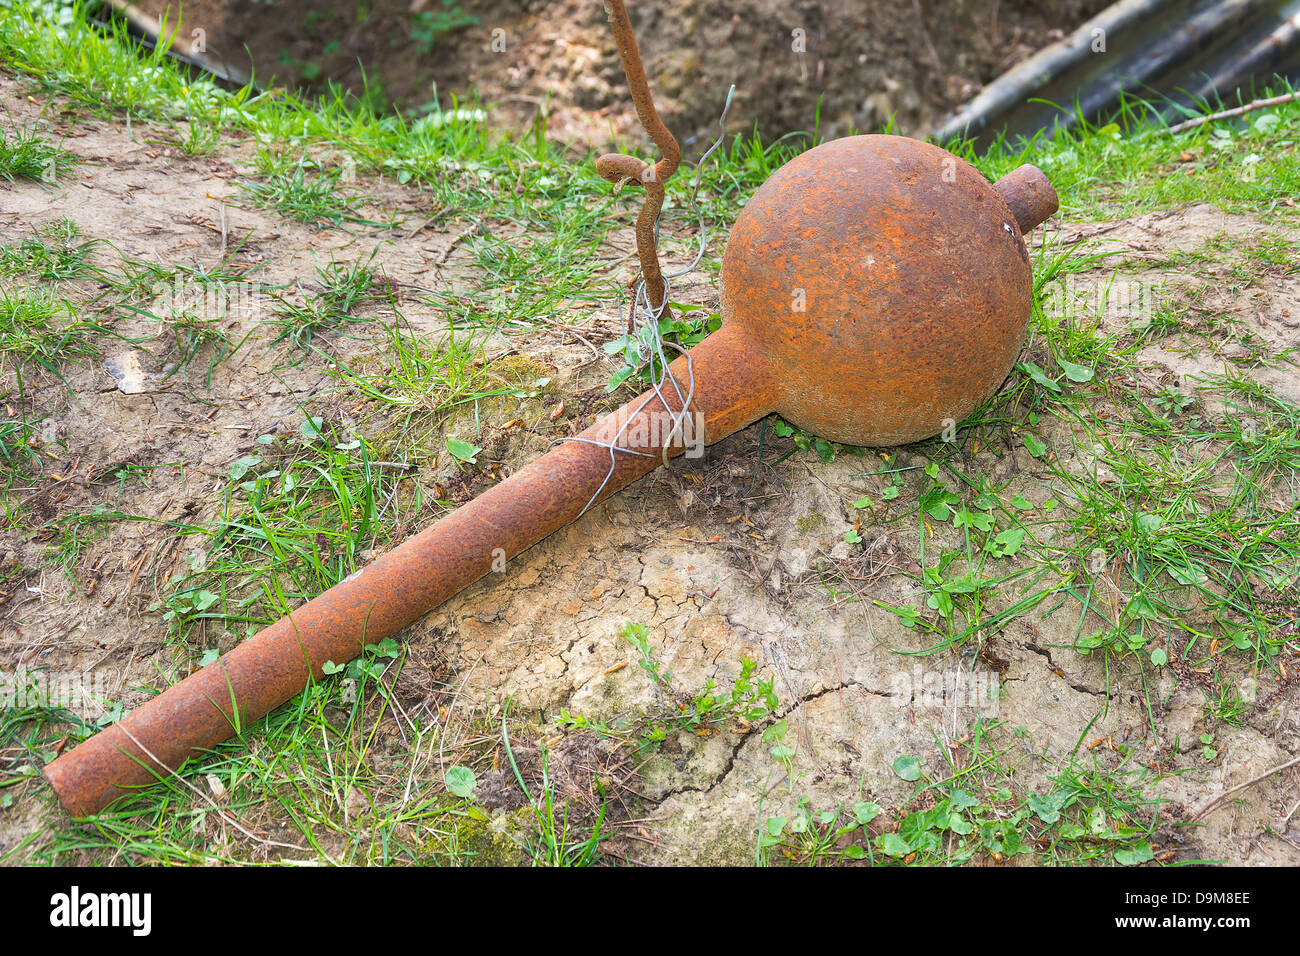 Mortier de tranchée moyenne ou Apple caramel ou bombe de mortier Plum-pudding lancé à partir de tranchées britanniques entre 1915 et 1917. Banque D'Images